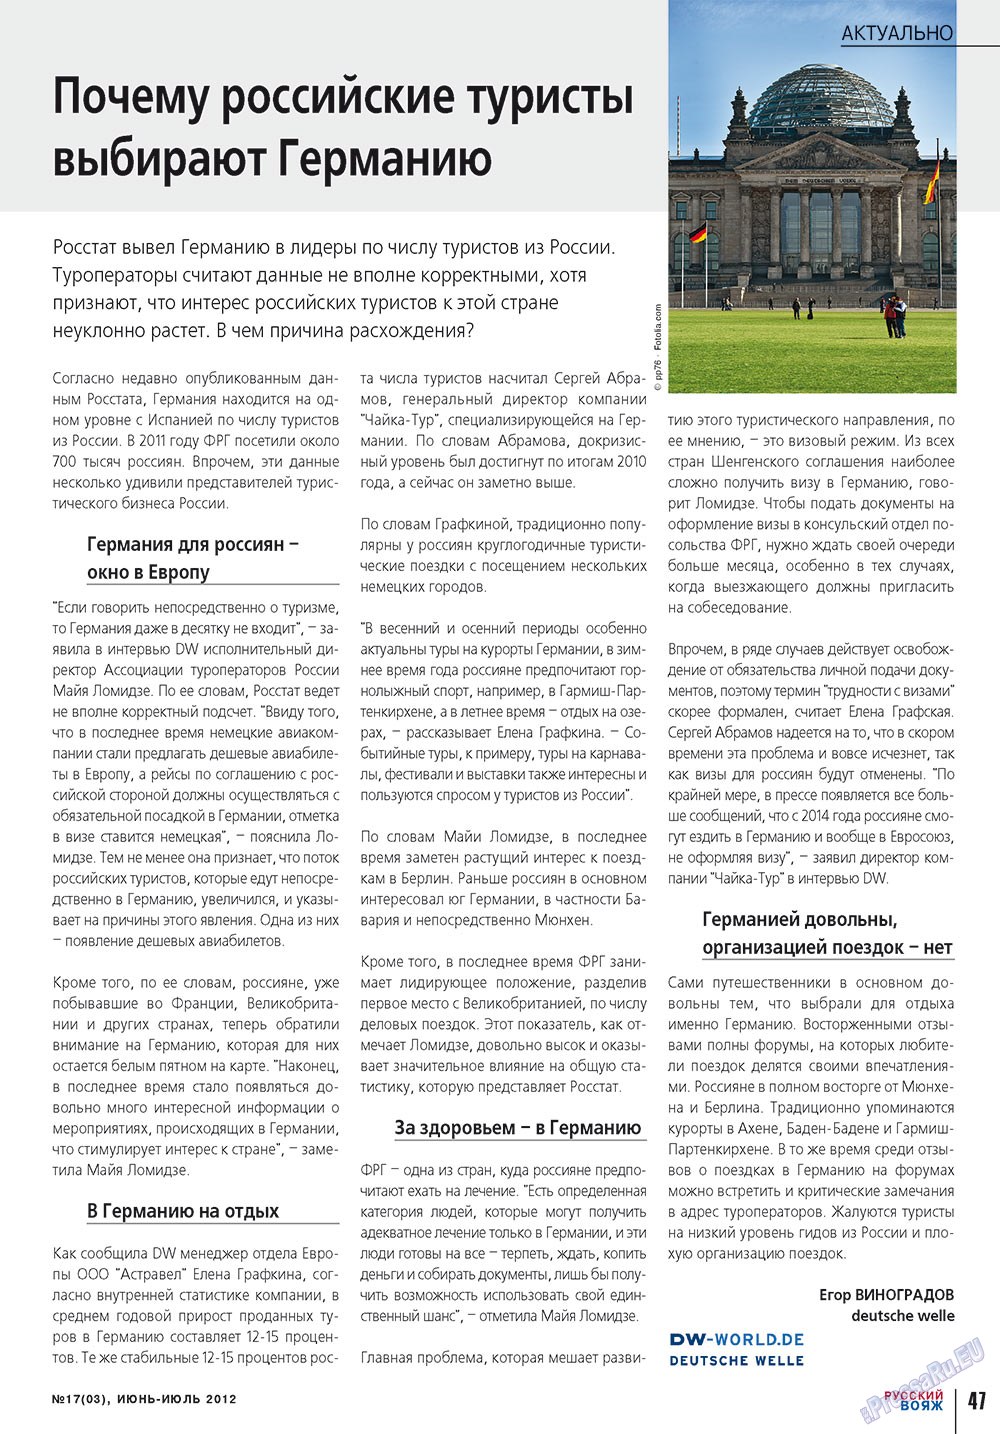 Русский вояж (журнал). 2012 год, номер 17, стр. 47